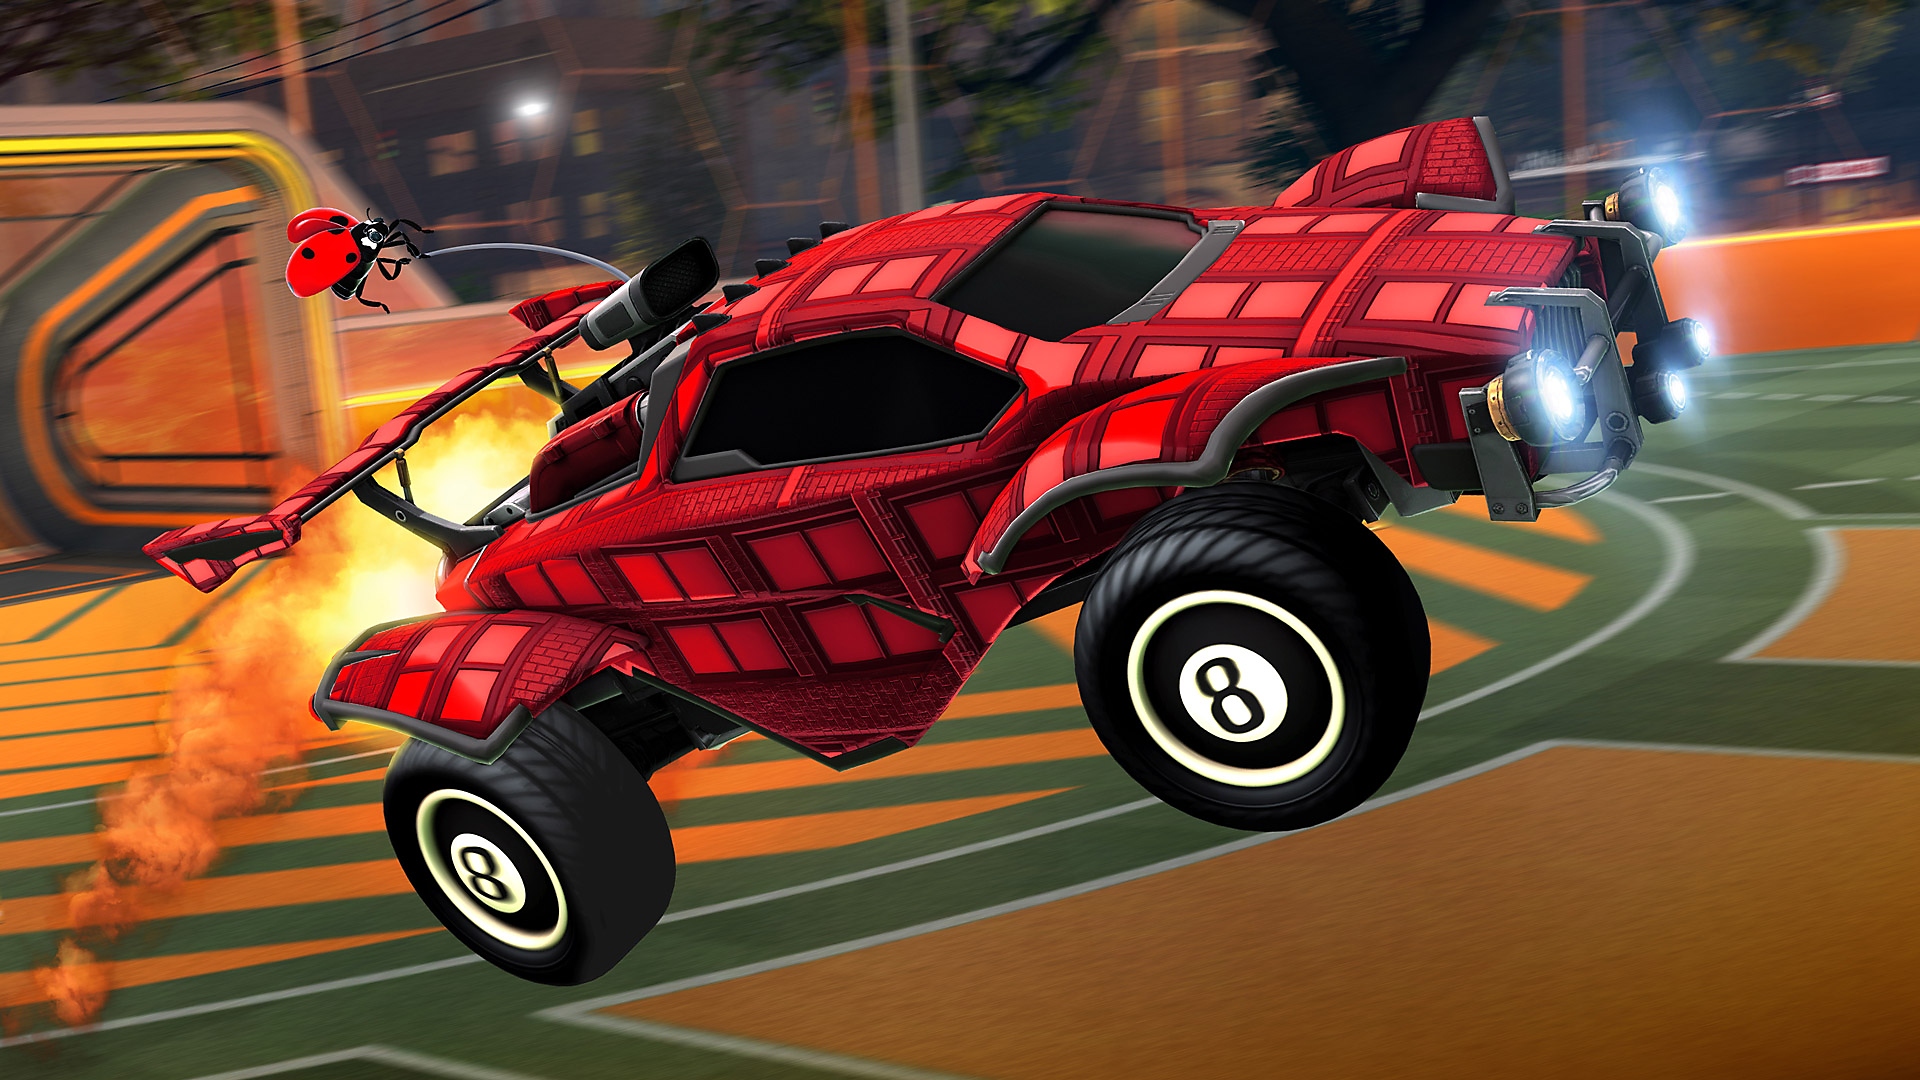 Rocket League screenshot showing a red car